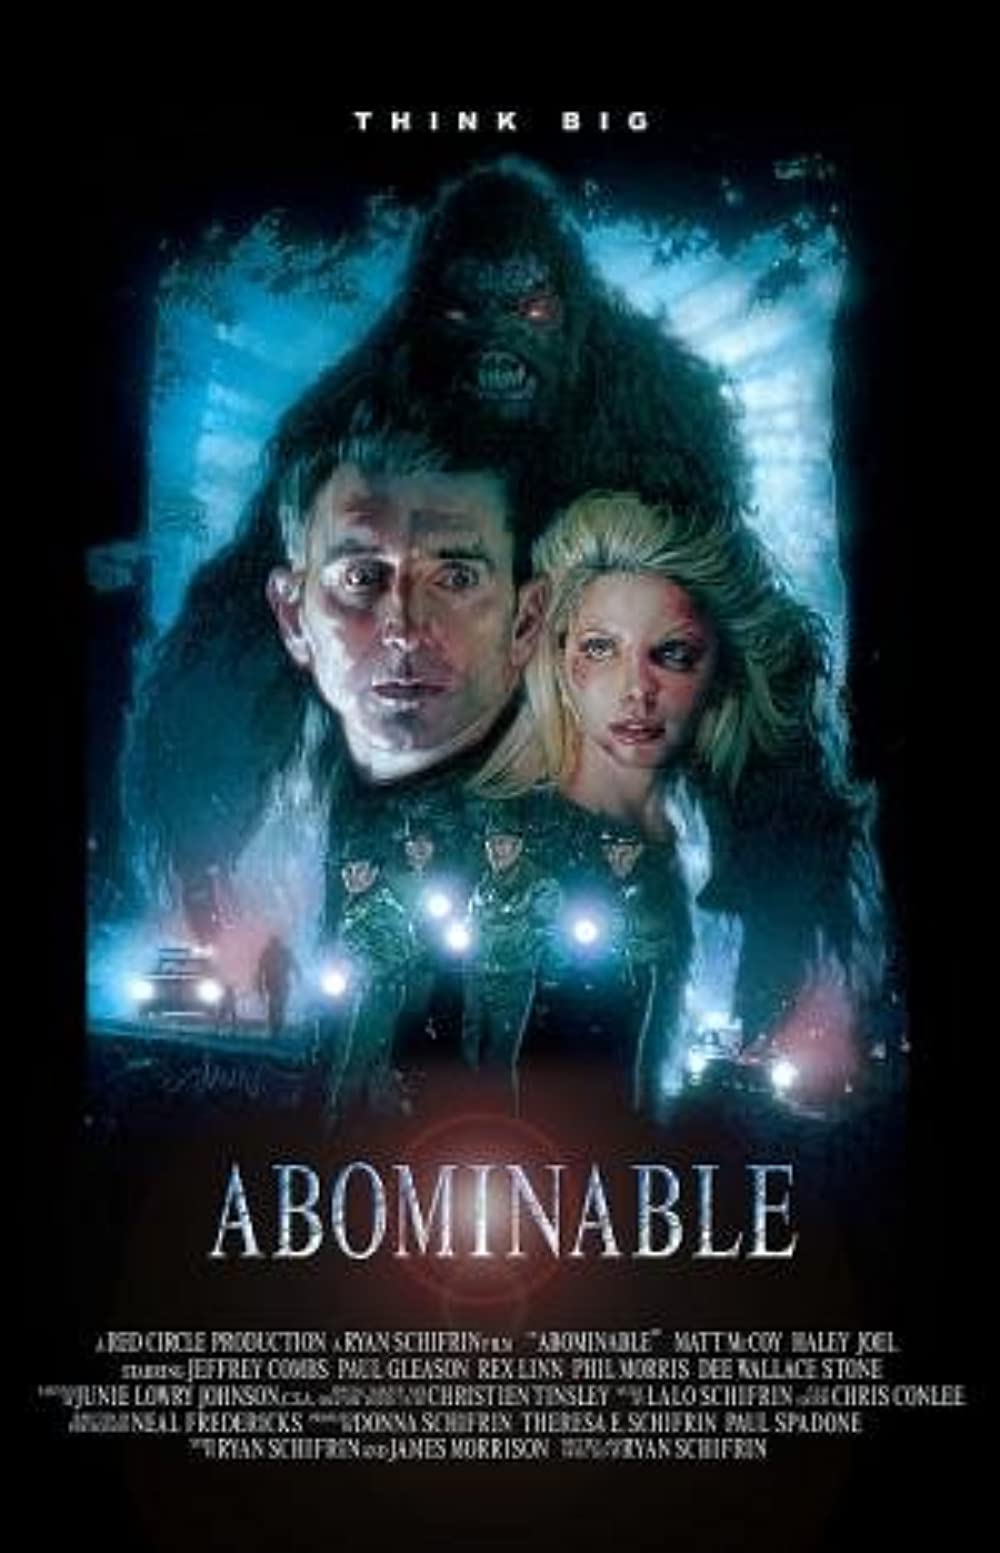 Filmbeschreibung zu Abominable